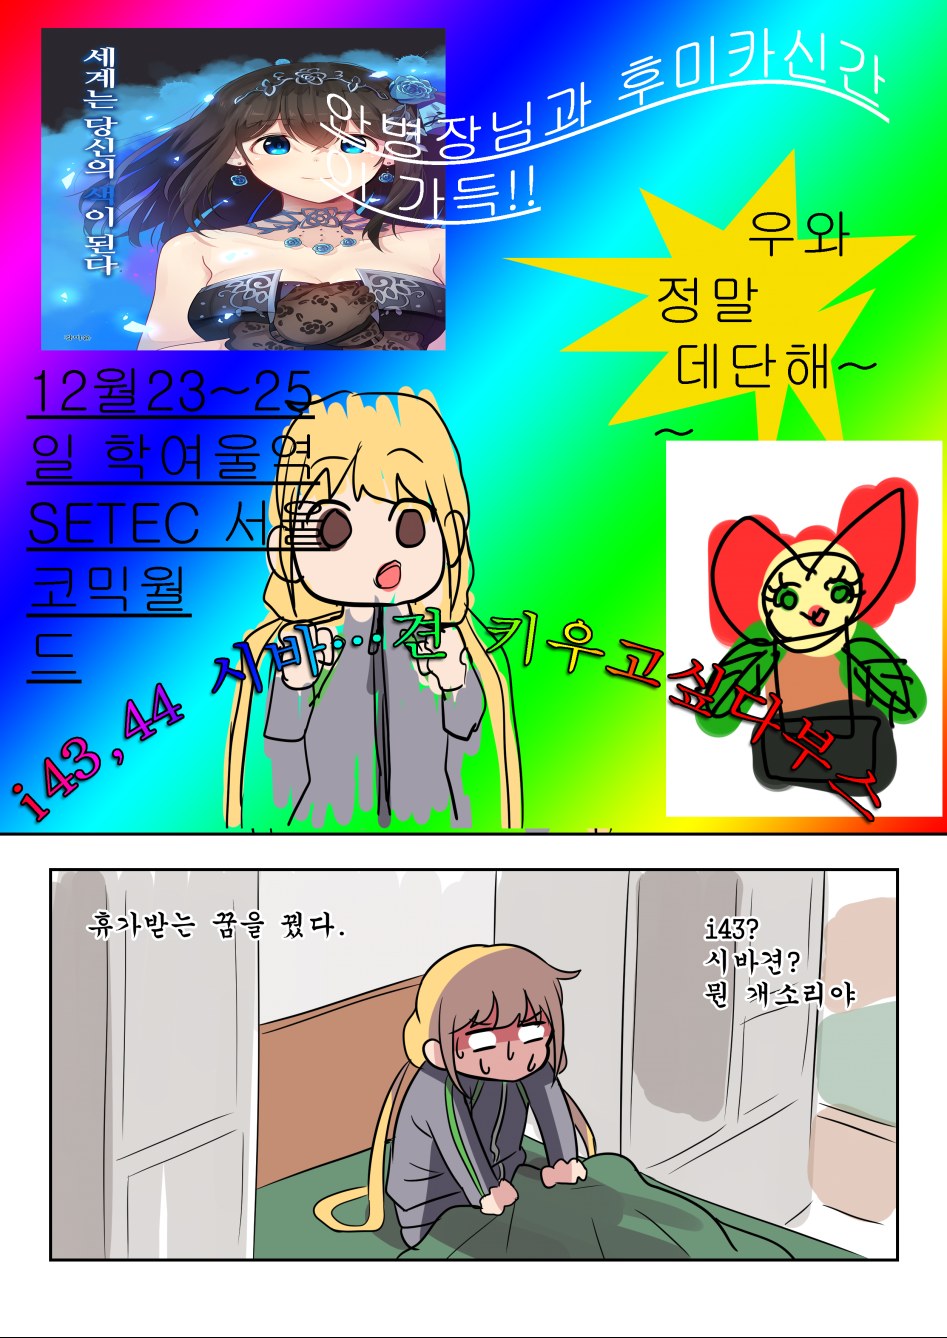 12코홍보 만화 (3).png